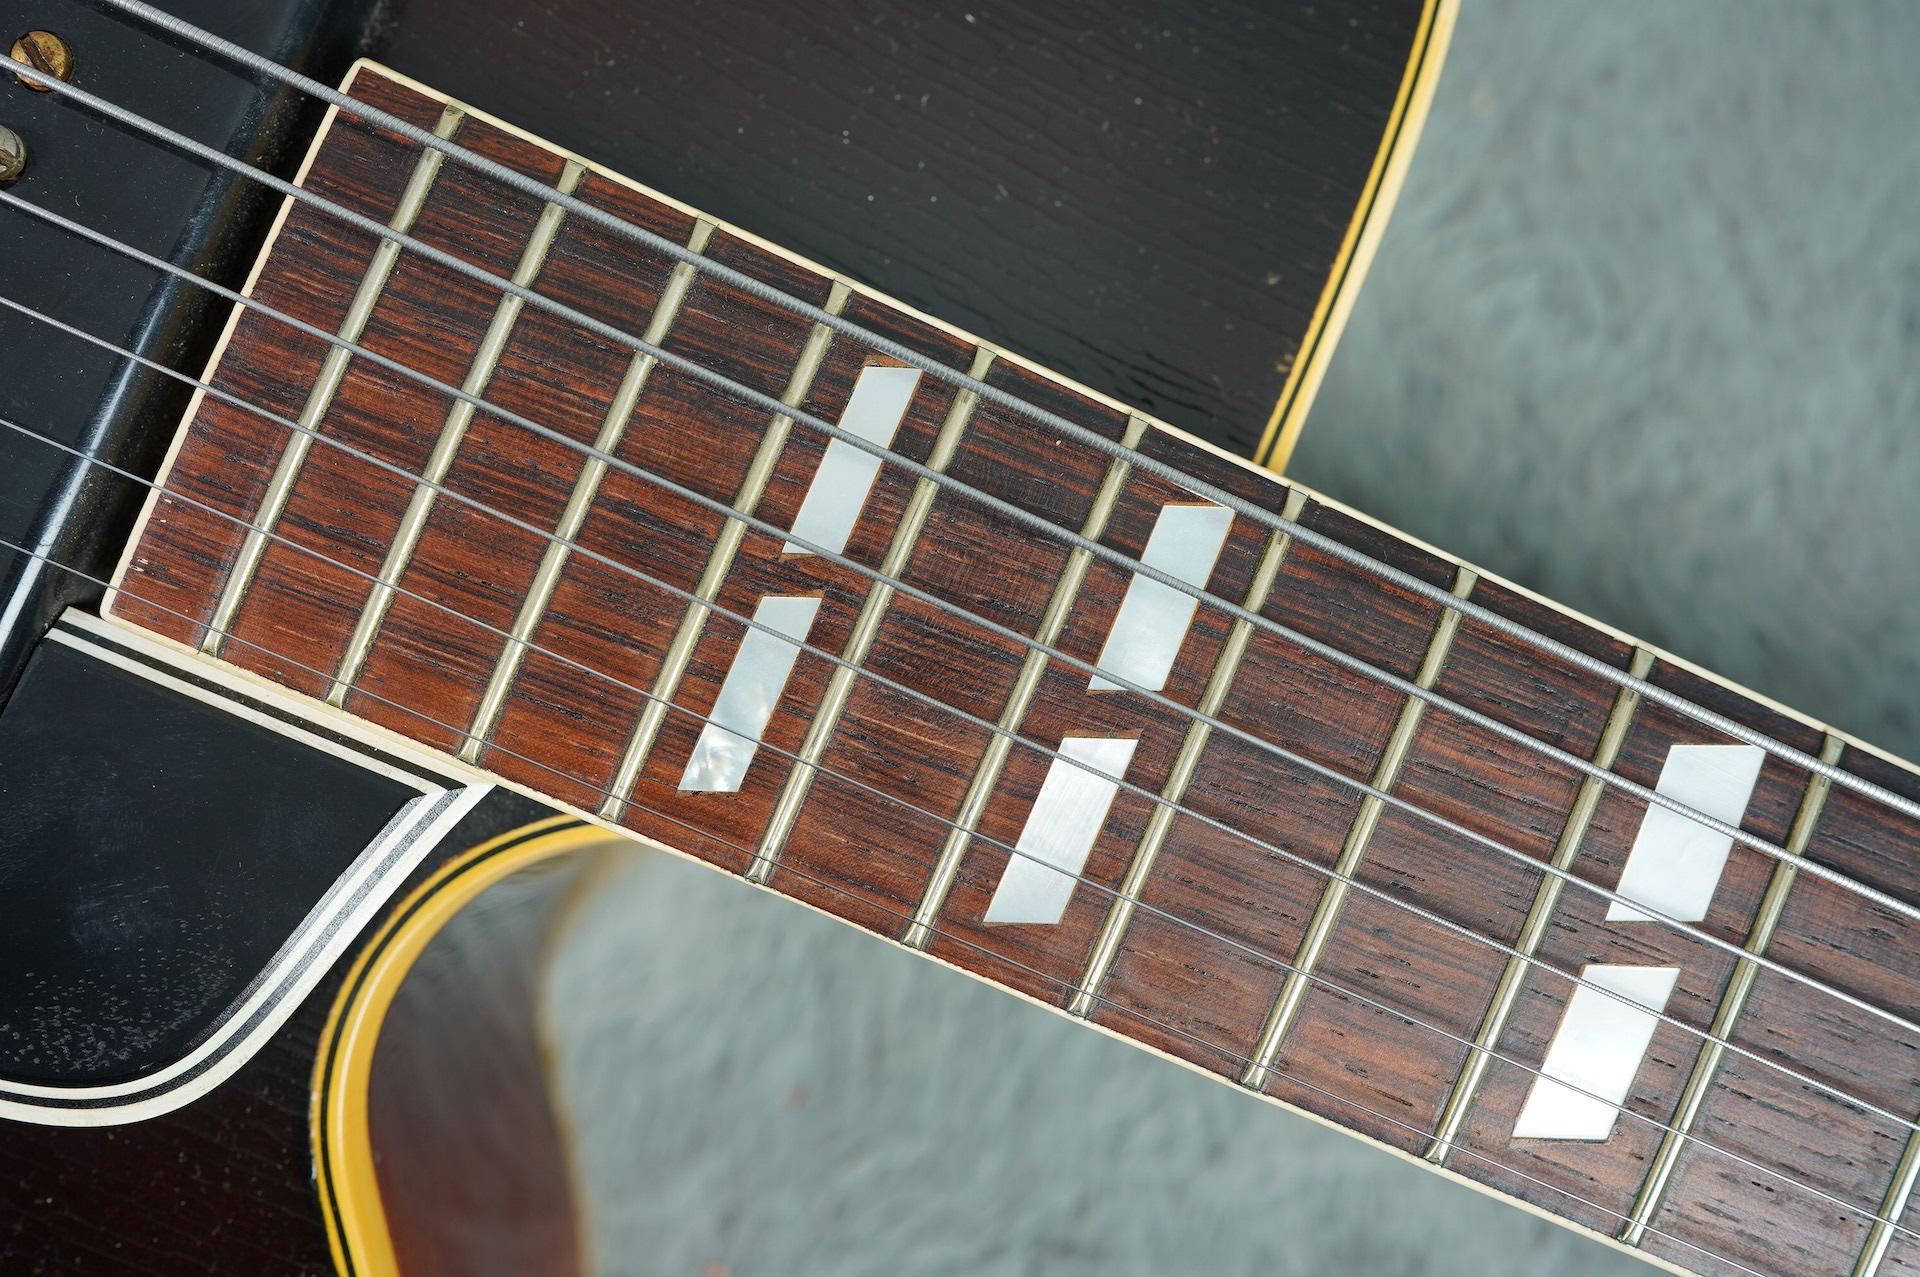 1954 Gibson ES-350 Spruce Top + HSC